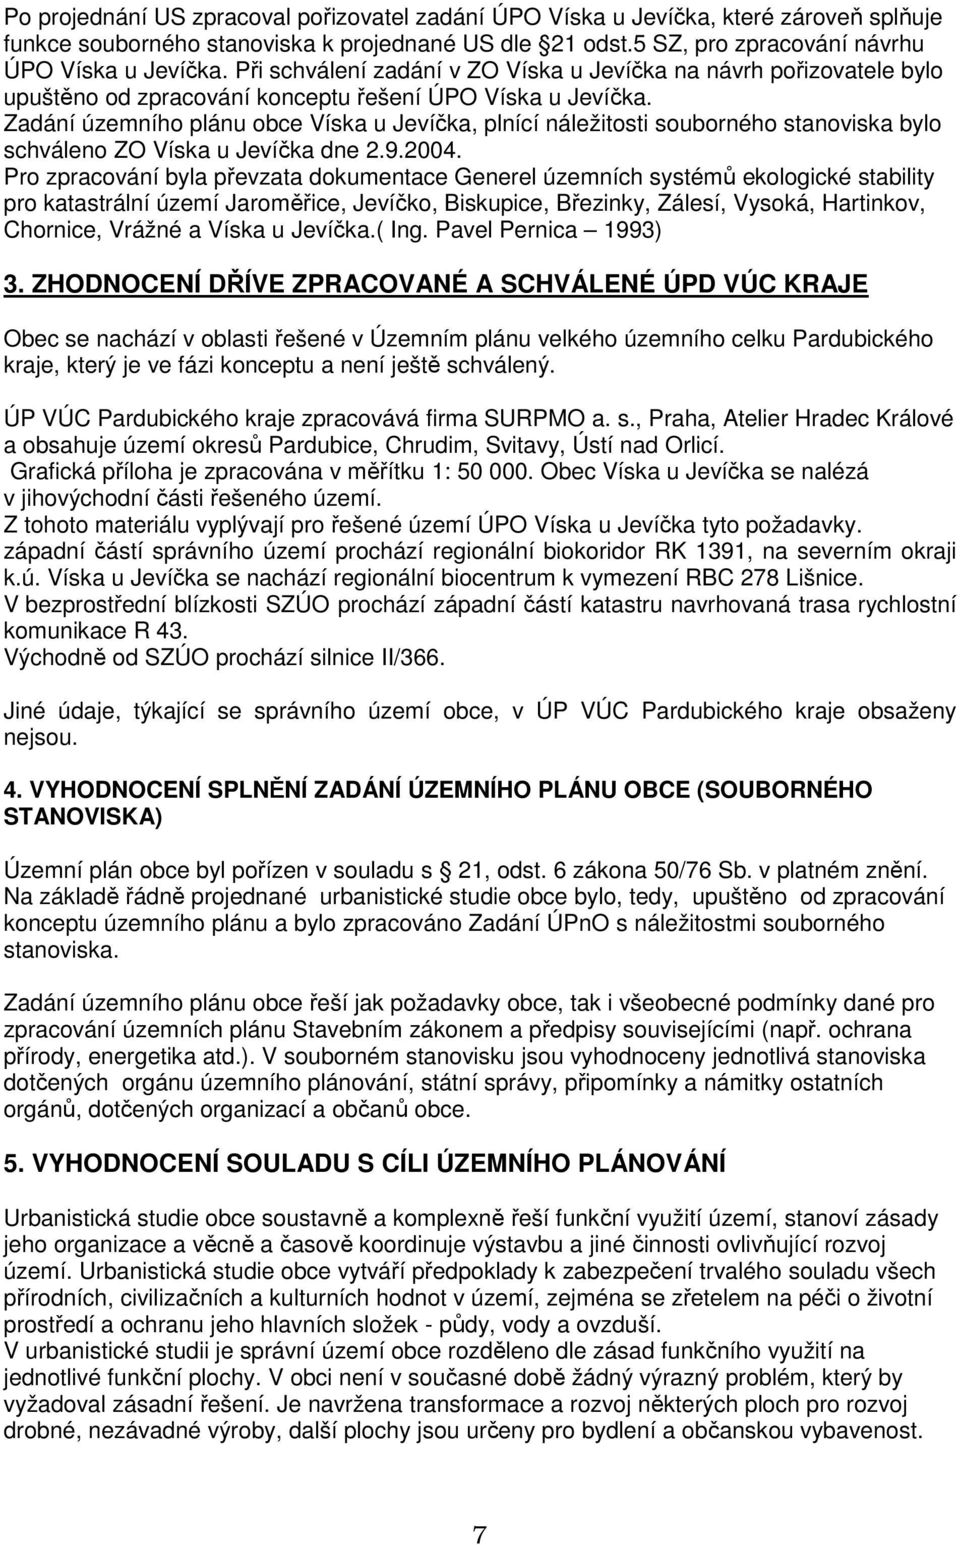 Zadání územního plánu obce Víska u Jevíčka, plnící náležitosti souborného stanoviska bylo schváleno ZO Víska u Jevíčka dne 2.9.2004.